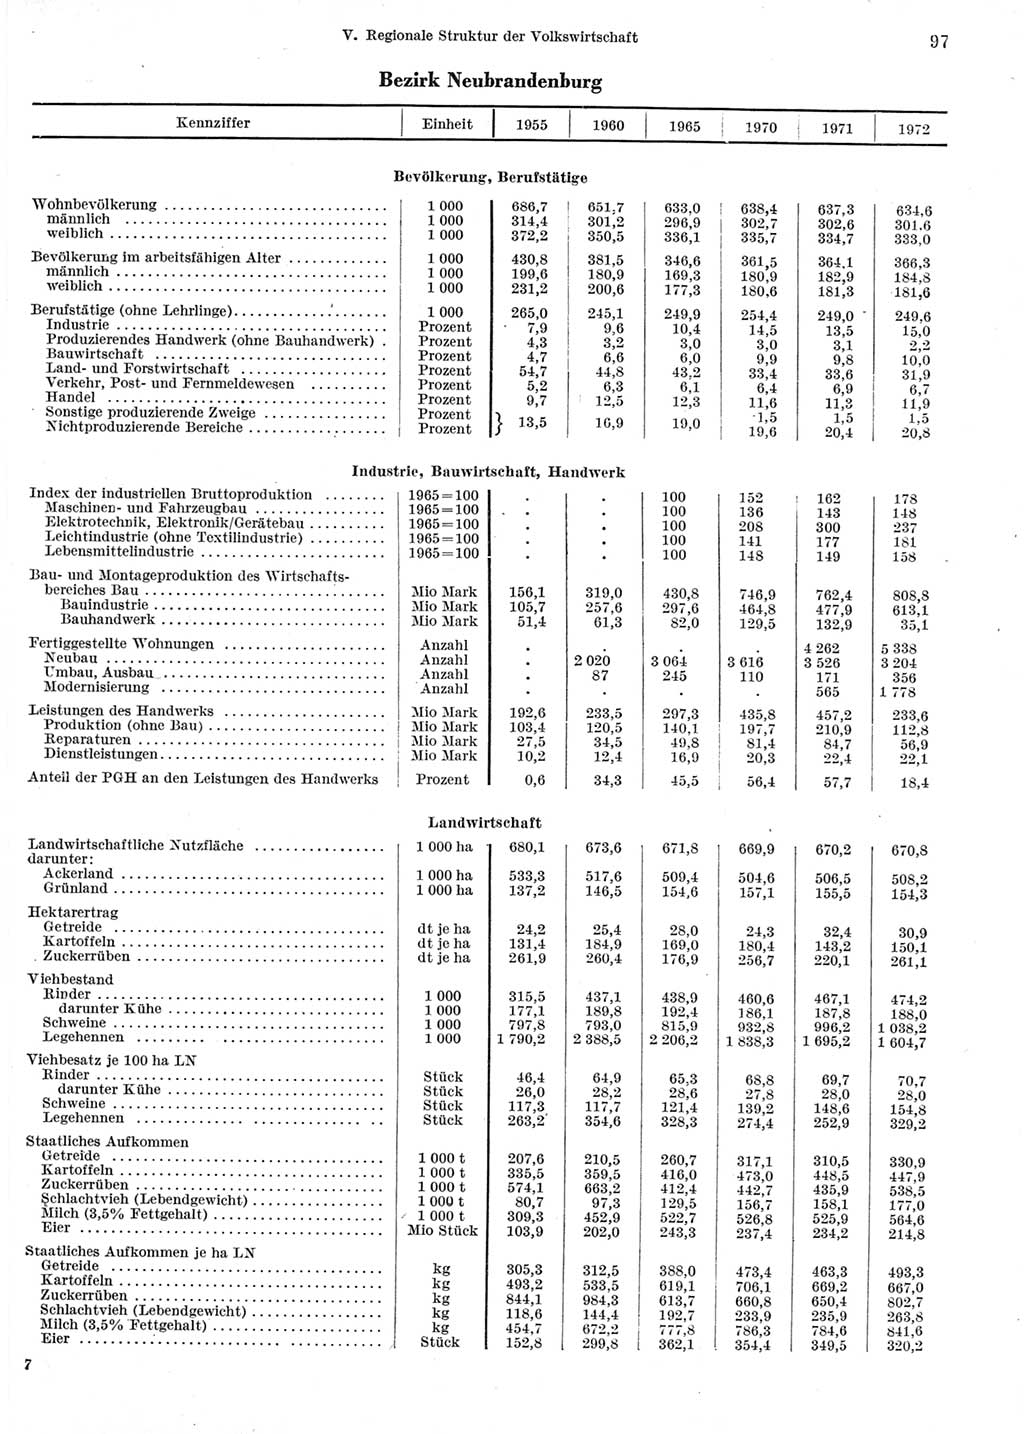 Statistisches Jahrbuch der Deutschen Demokratischen Republik (DDR) 1973, Seite 97 (Stat. Jb. DDR 1973, S. 97)